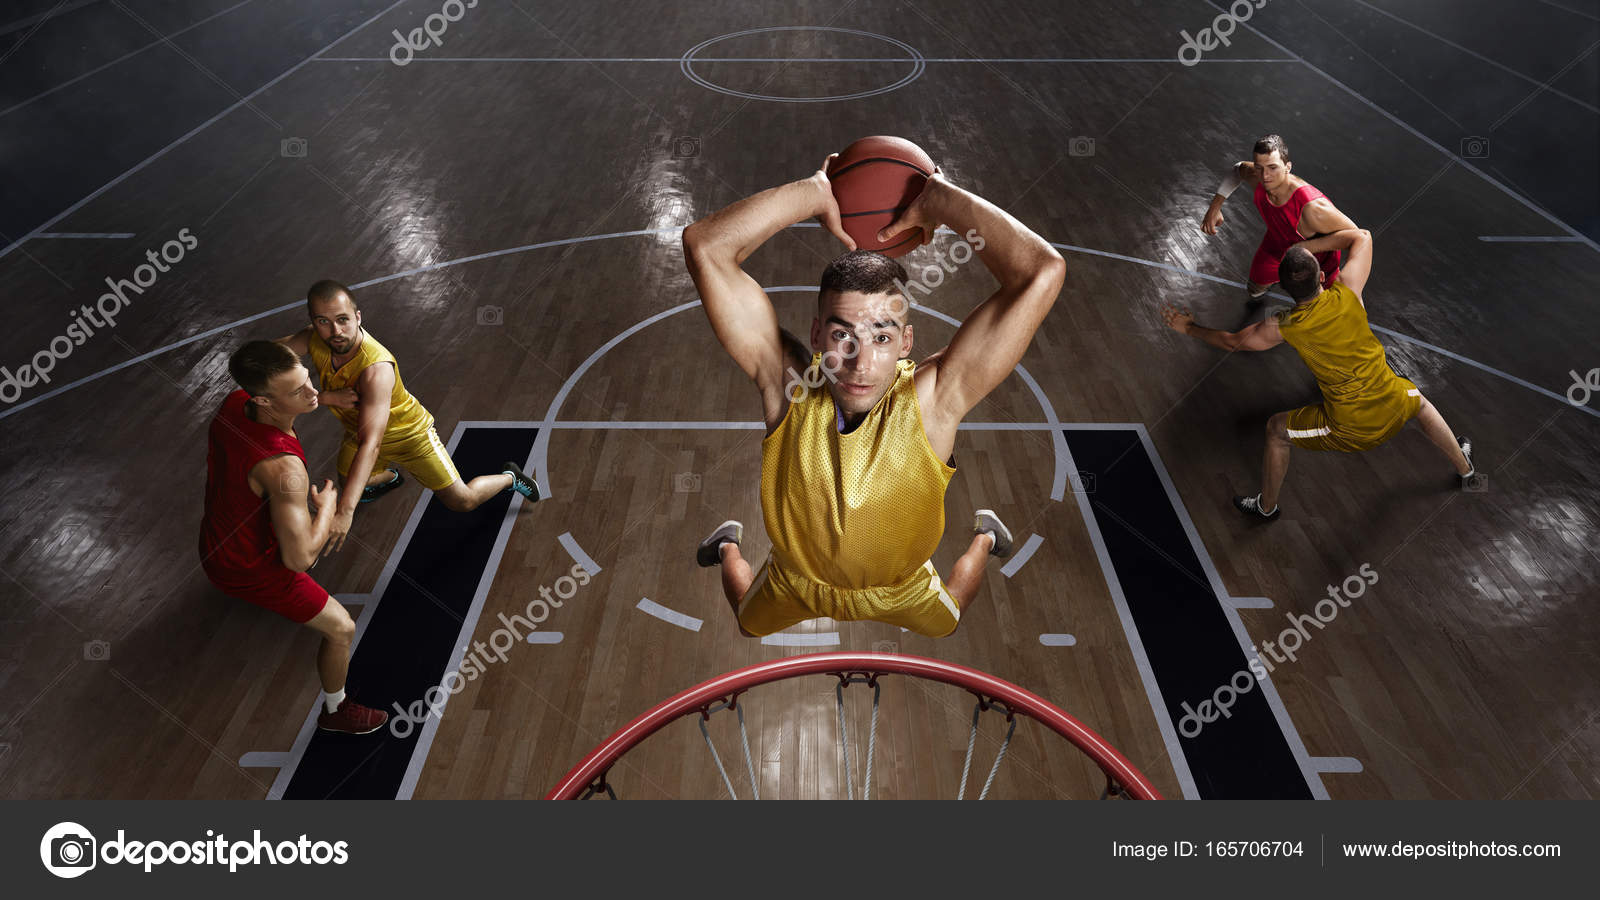 Jogadores de basquete na grande arena profissional durante o jogo